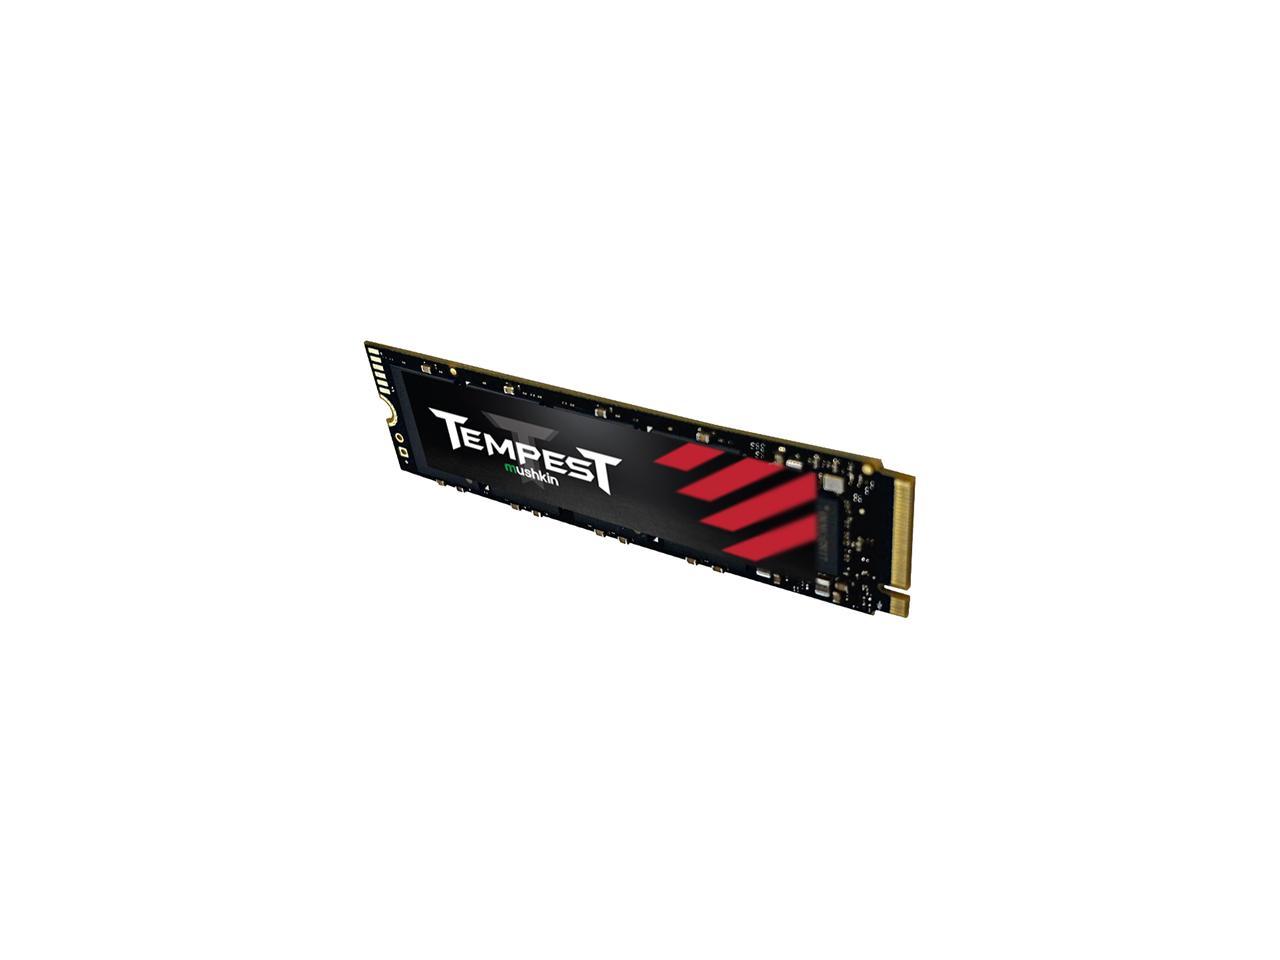 Mushkin Tempest 256GB PCIe Gen3 x4 NVMe 1.4 M.2 (2280) Internal SSD - Up to 3,100MBs - MKNSSDTS256GB-D8